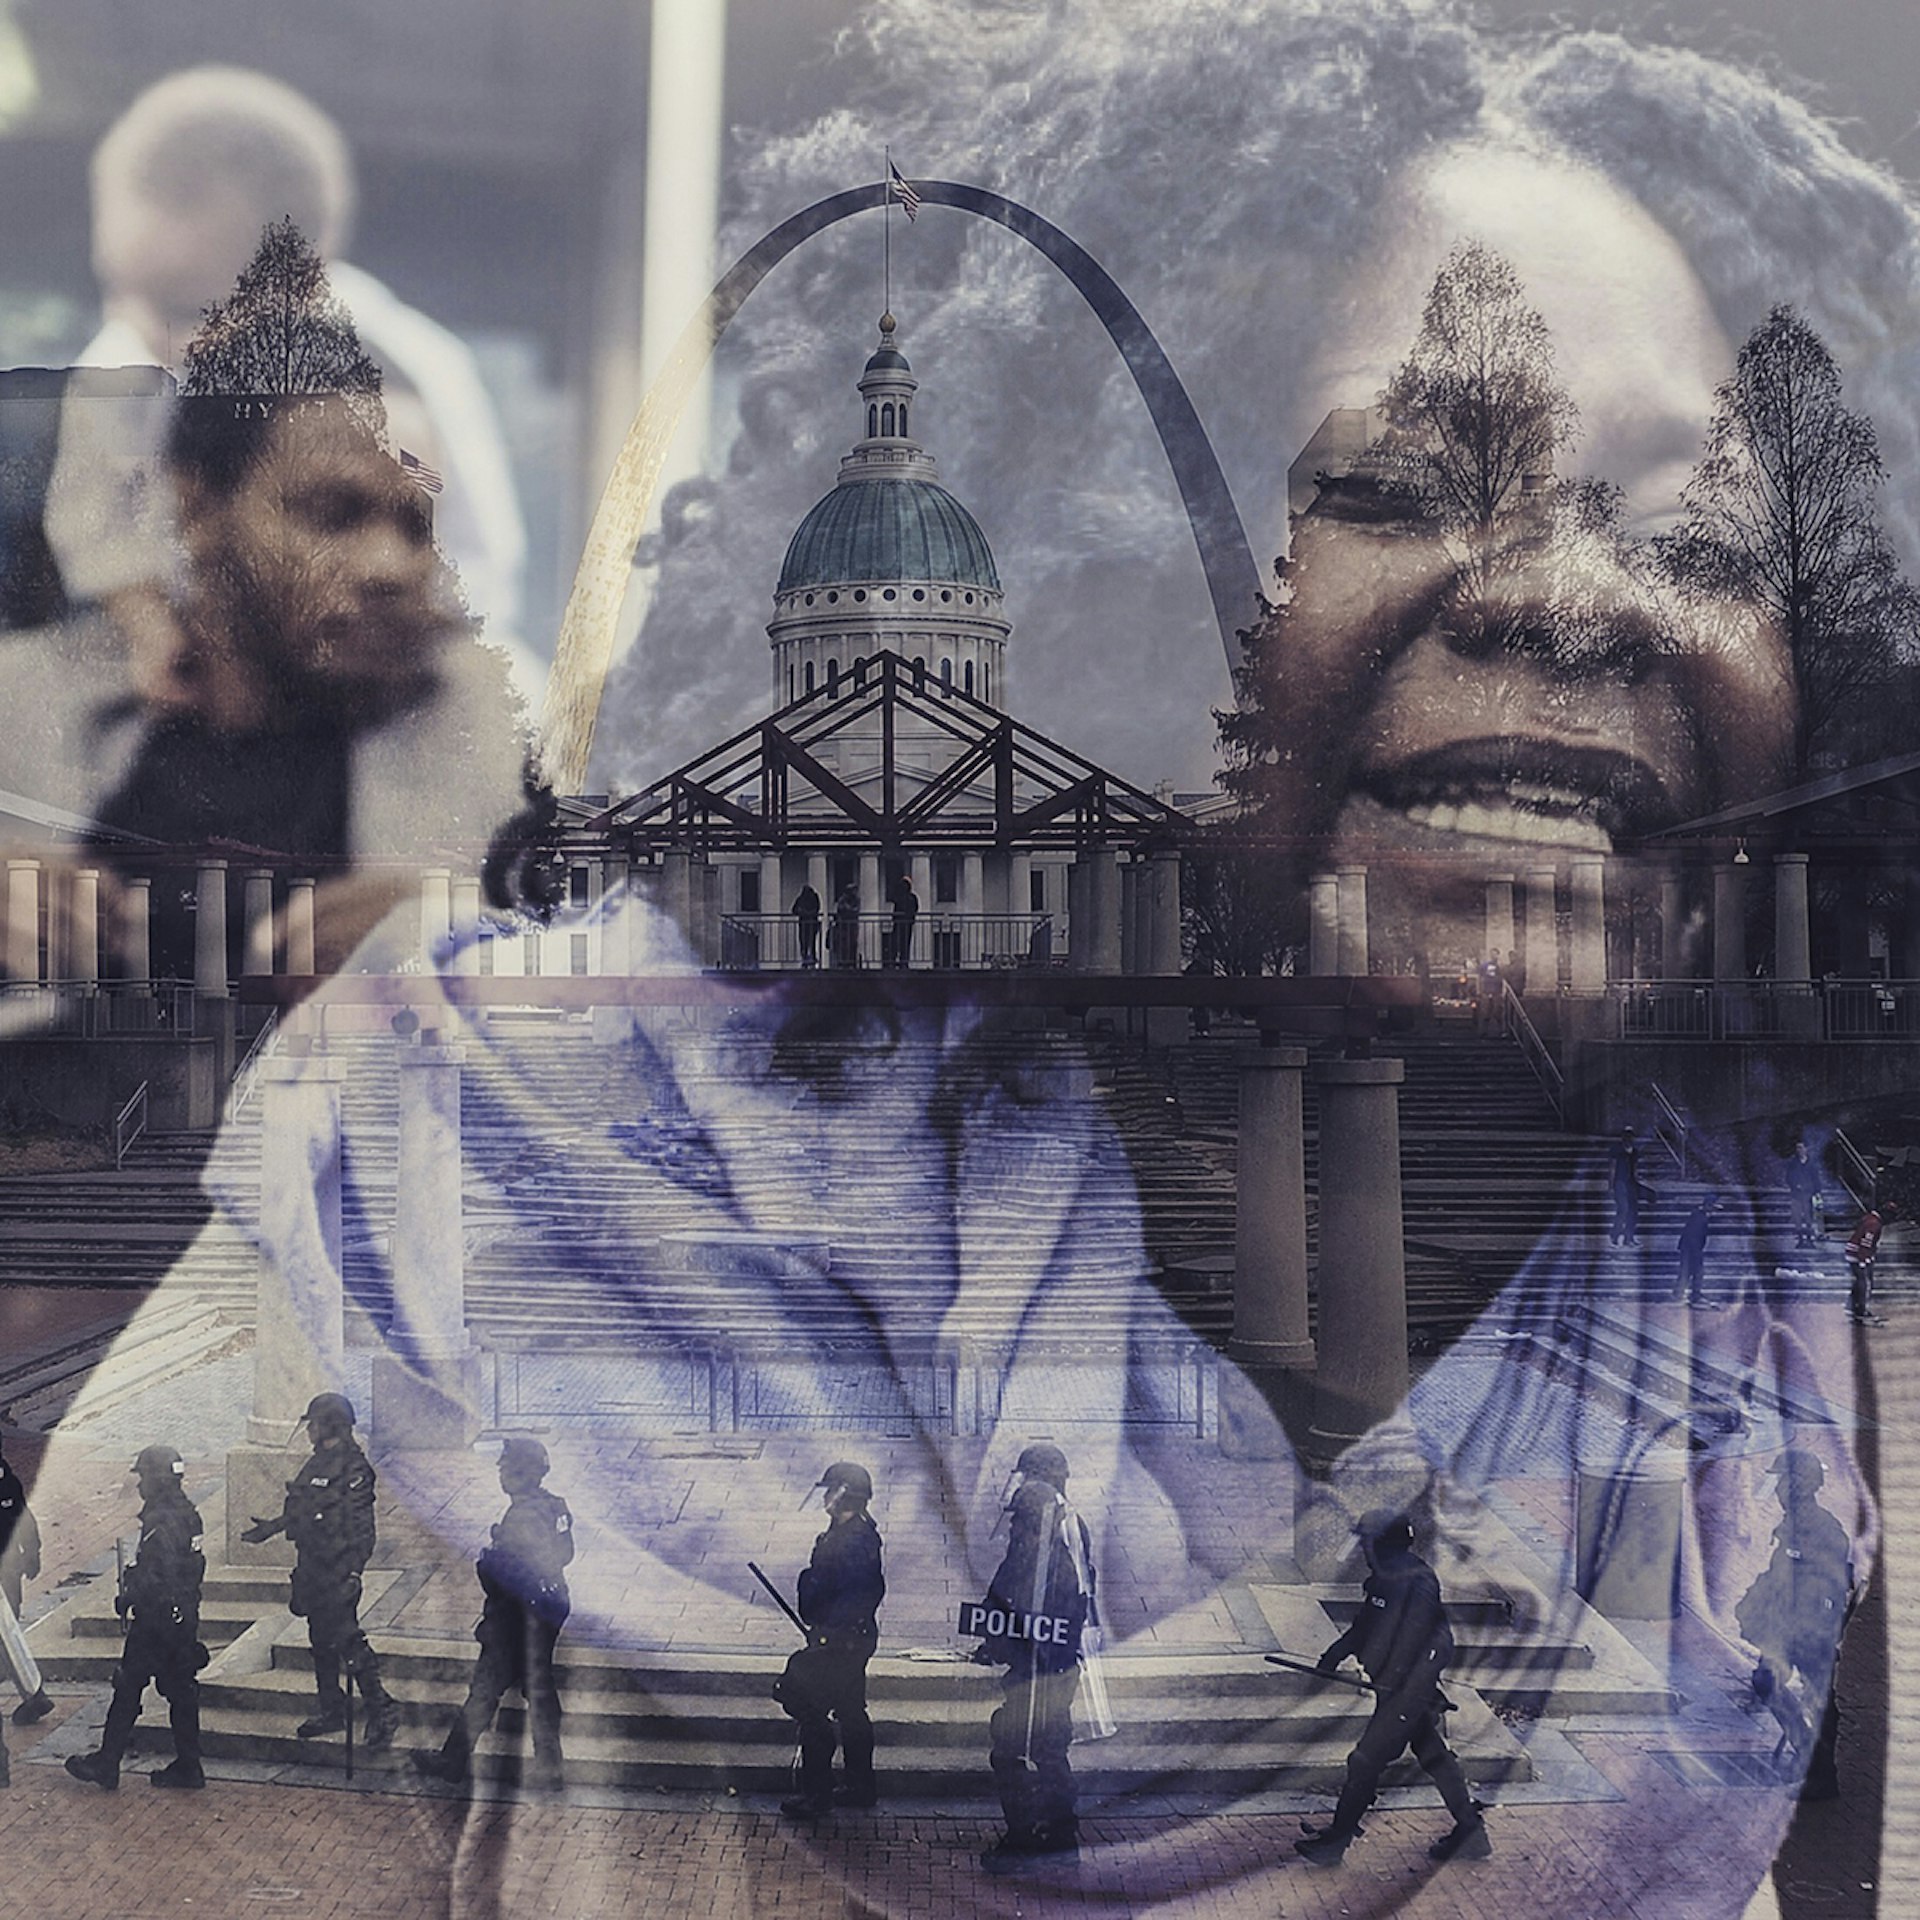 Ferguson/Baltimore by Michael Thomas and Glenford Nunez. Blended by Daniella Zalcman.